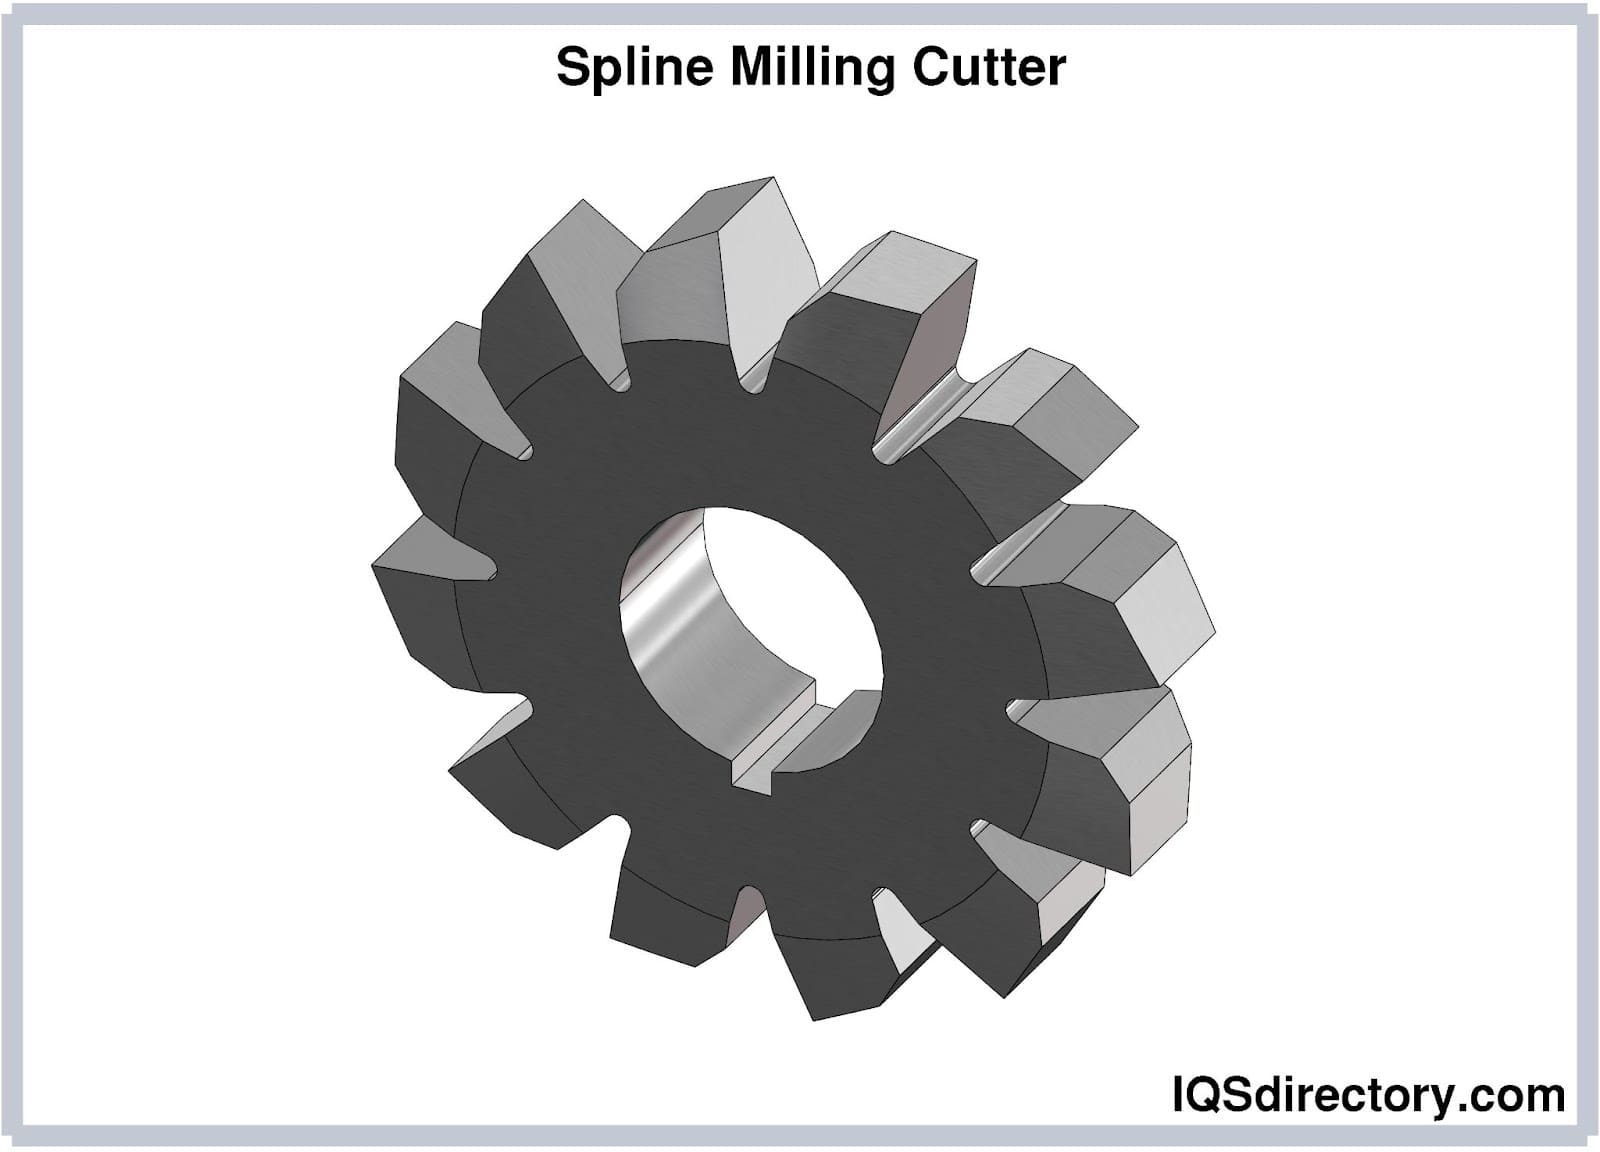 spline milling cutter